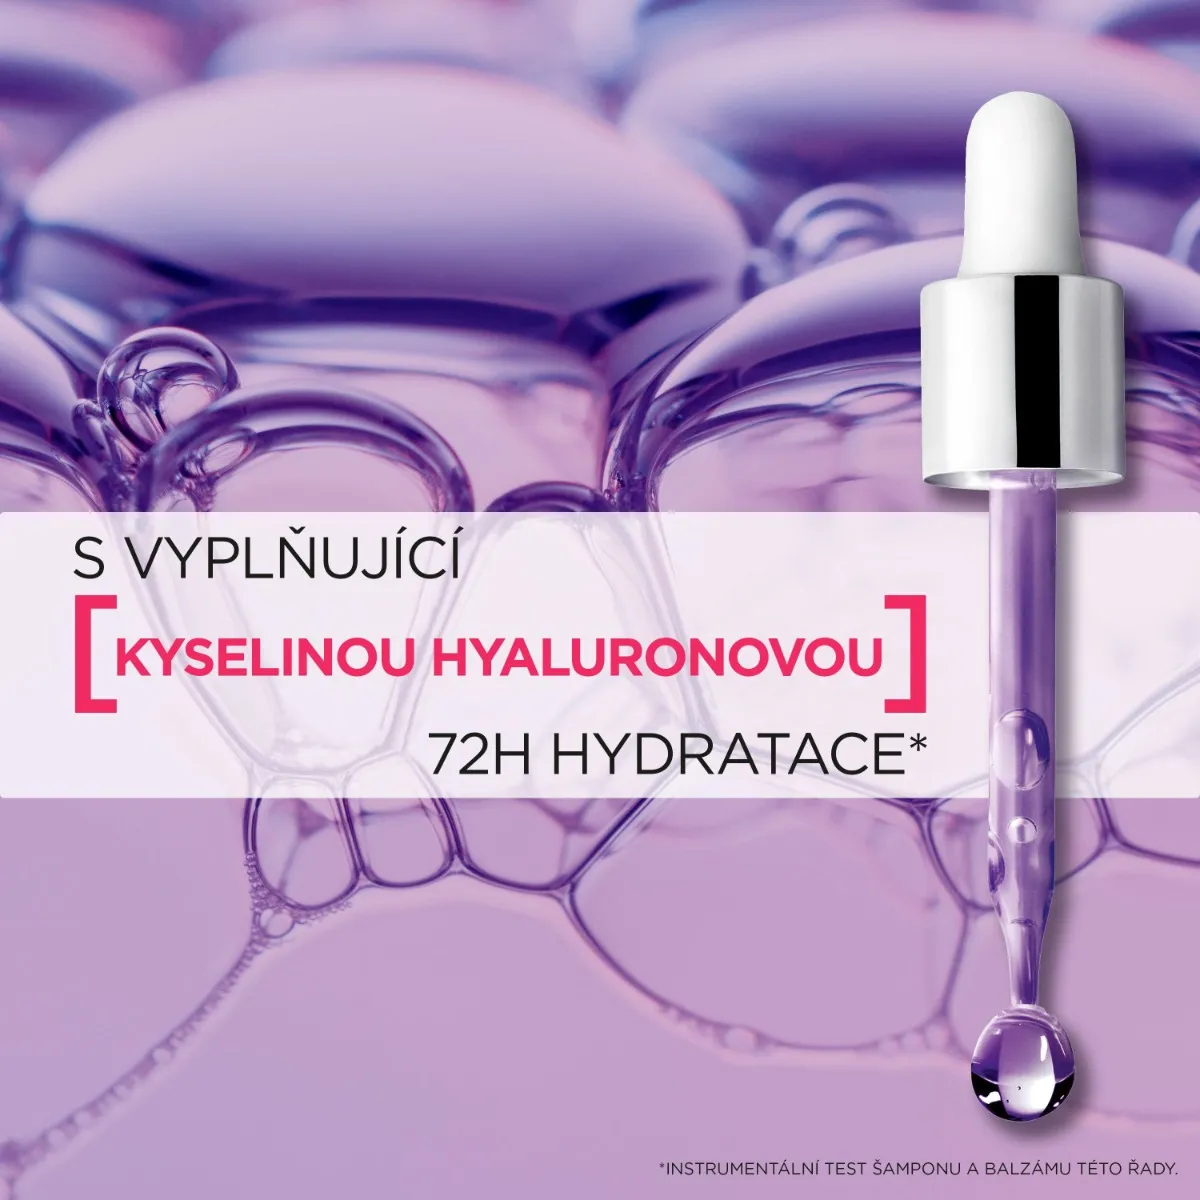 Loréal Paris Elseve Hyaluron Plump 72H hydratační šampon 250 ml